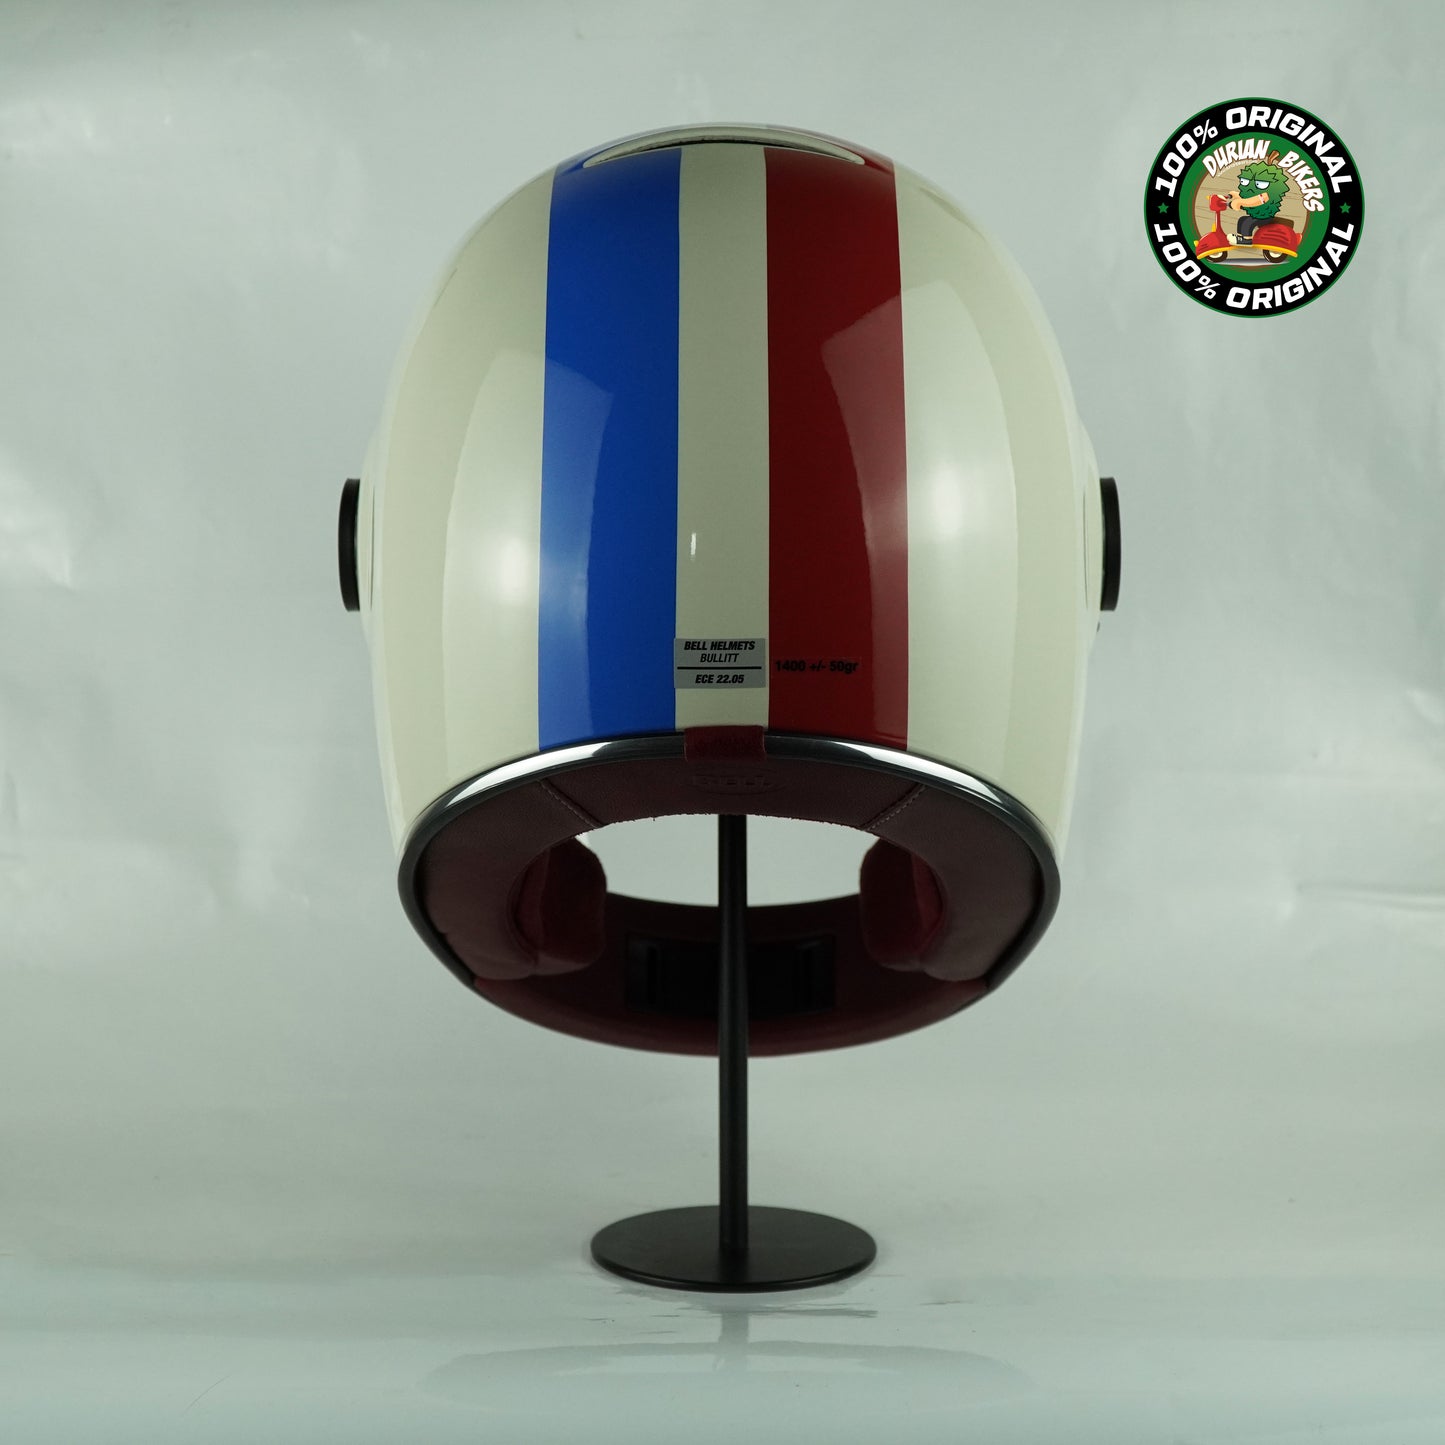 Bell Helmet Bullitt SE (Command Gloss Vintage White/OxBlood/Blue)